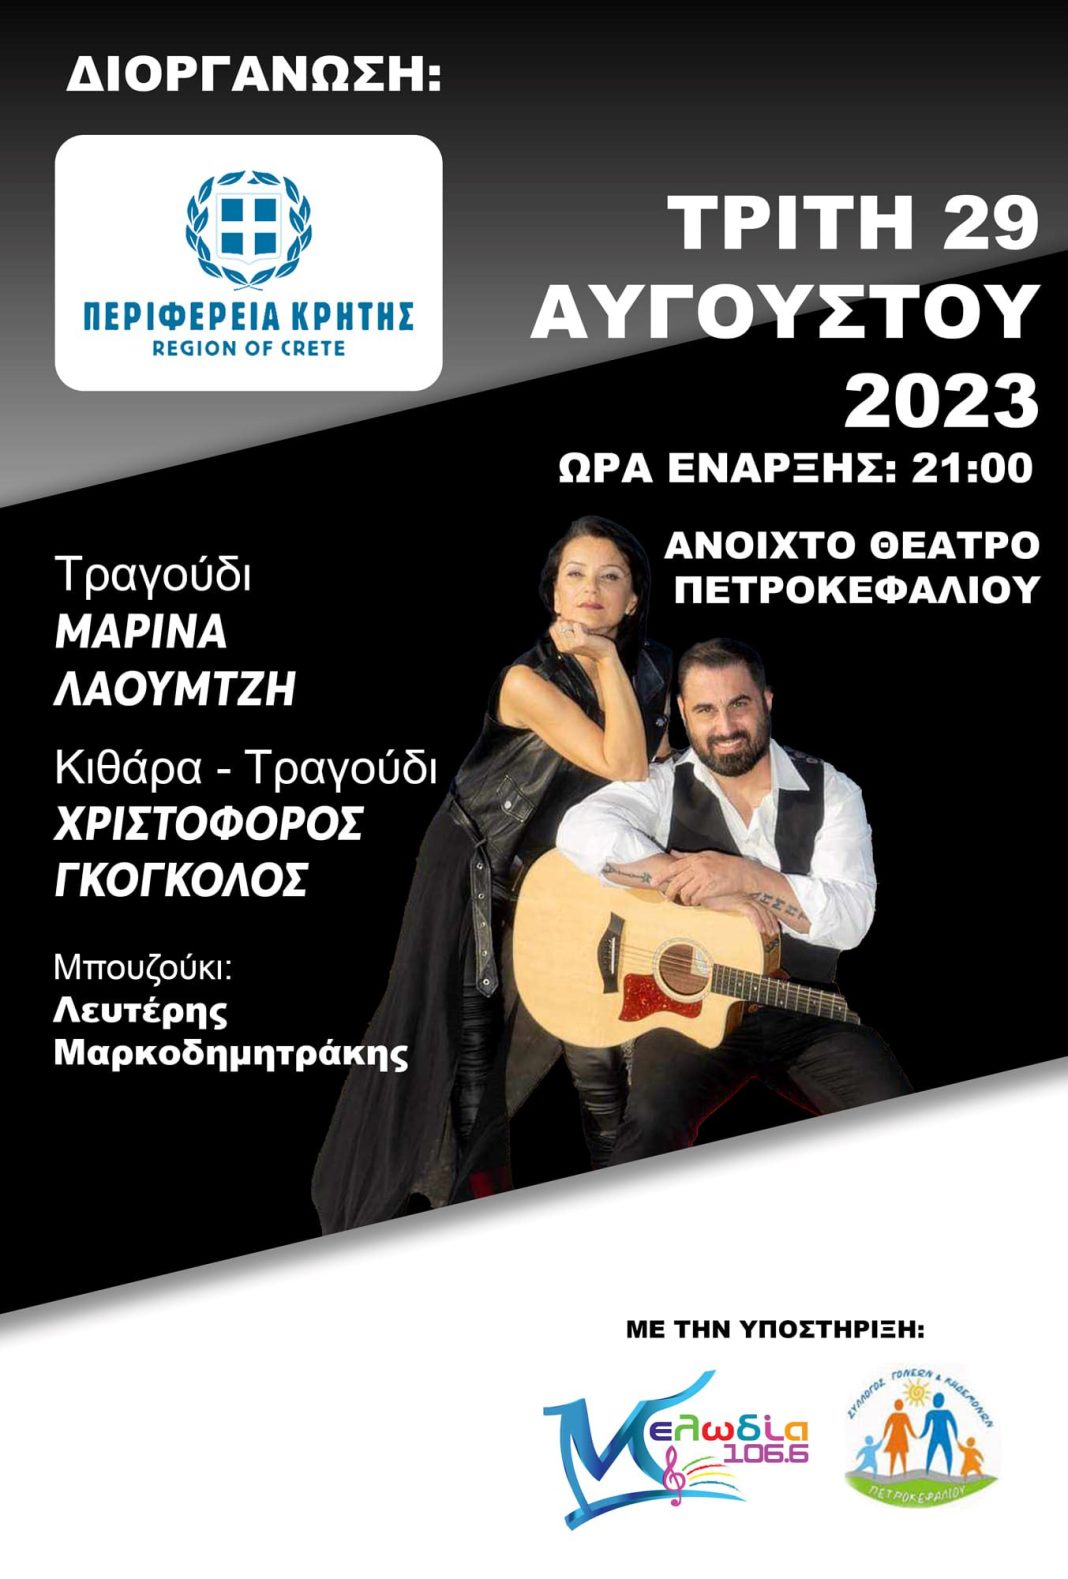 Βραδιές Θεάτρου και Μουσικής σε διοργάνωση Περιφέρειας Κρήτης